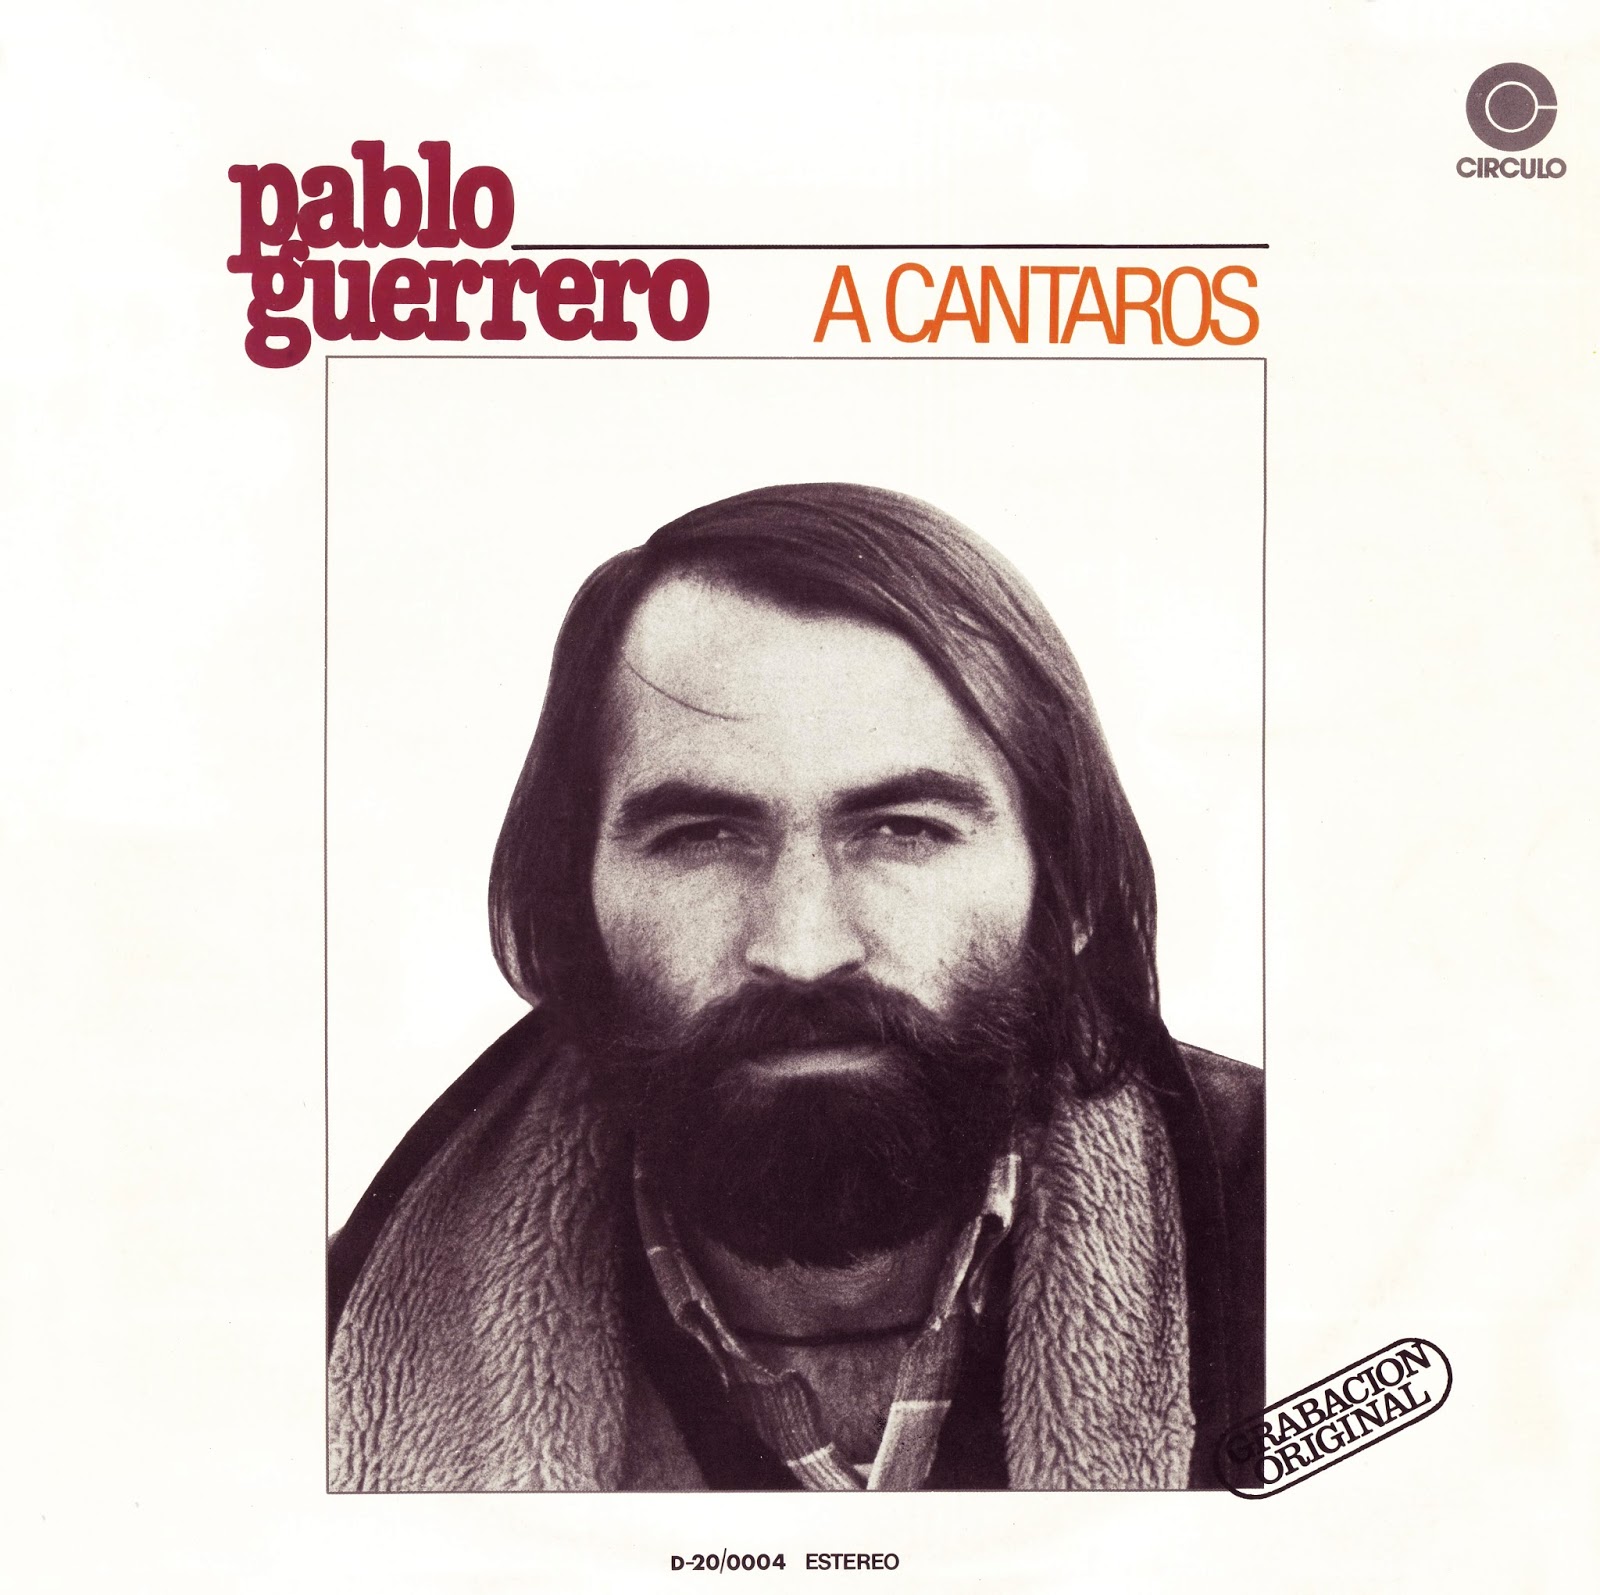 Pablo Guerrero - A cántaros (1972)